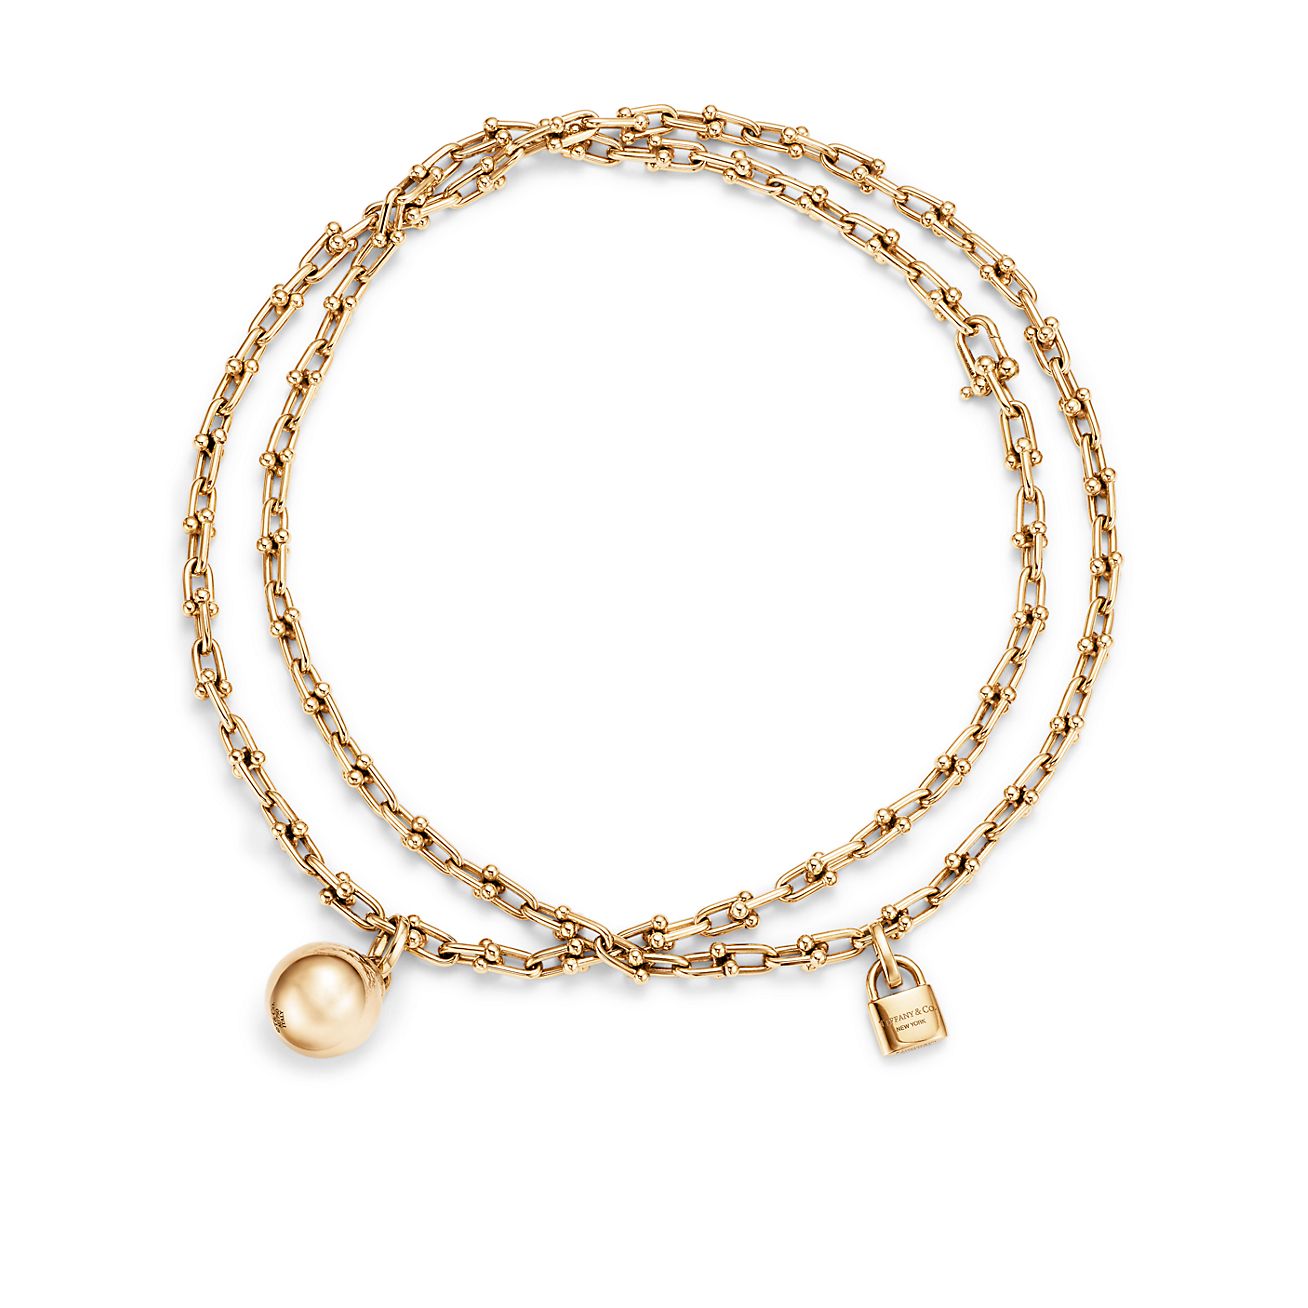 Tiffany HardWear wrap necklace in 18k 